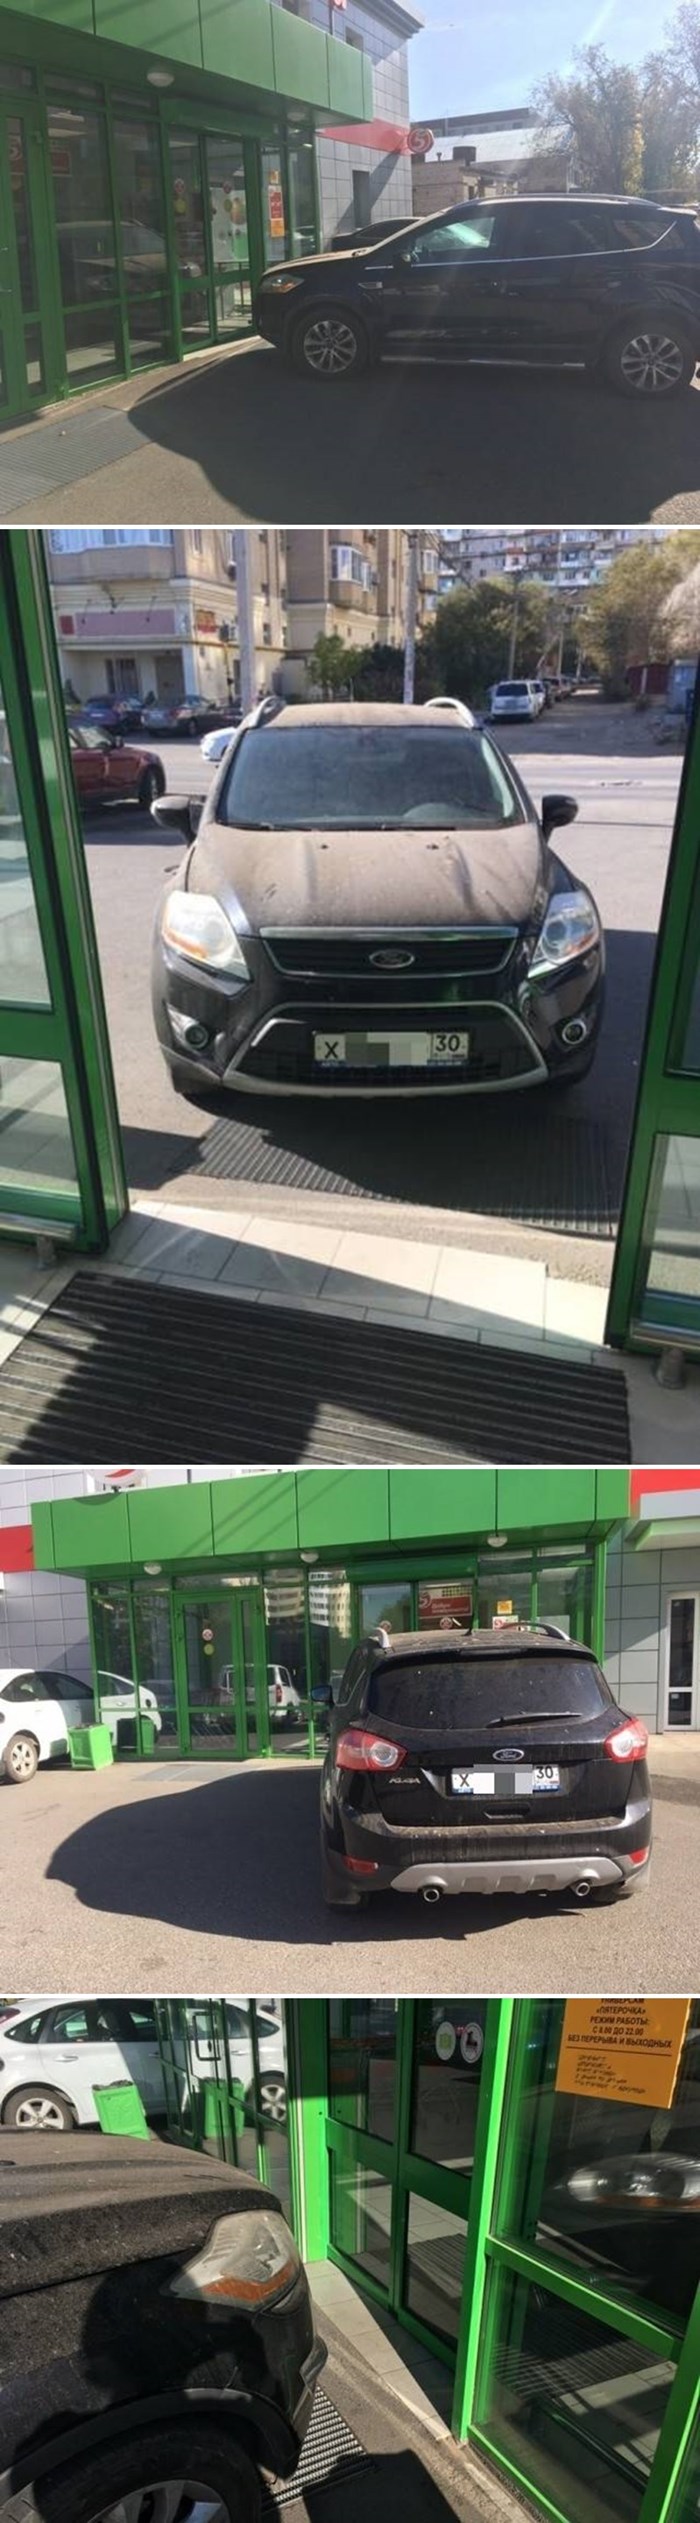 KAO DA JE SAM NA SVIJETU Rus išao u kupovinu, ostali nisu mogli vjerovati kad su vidjeli kako je parkirao auto